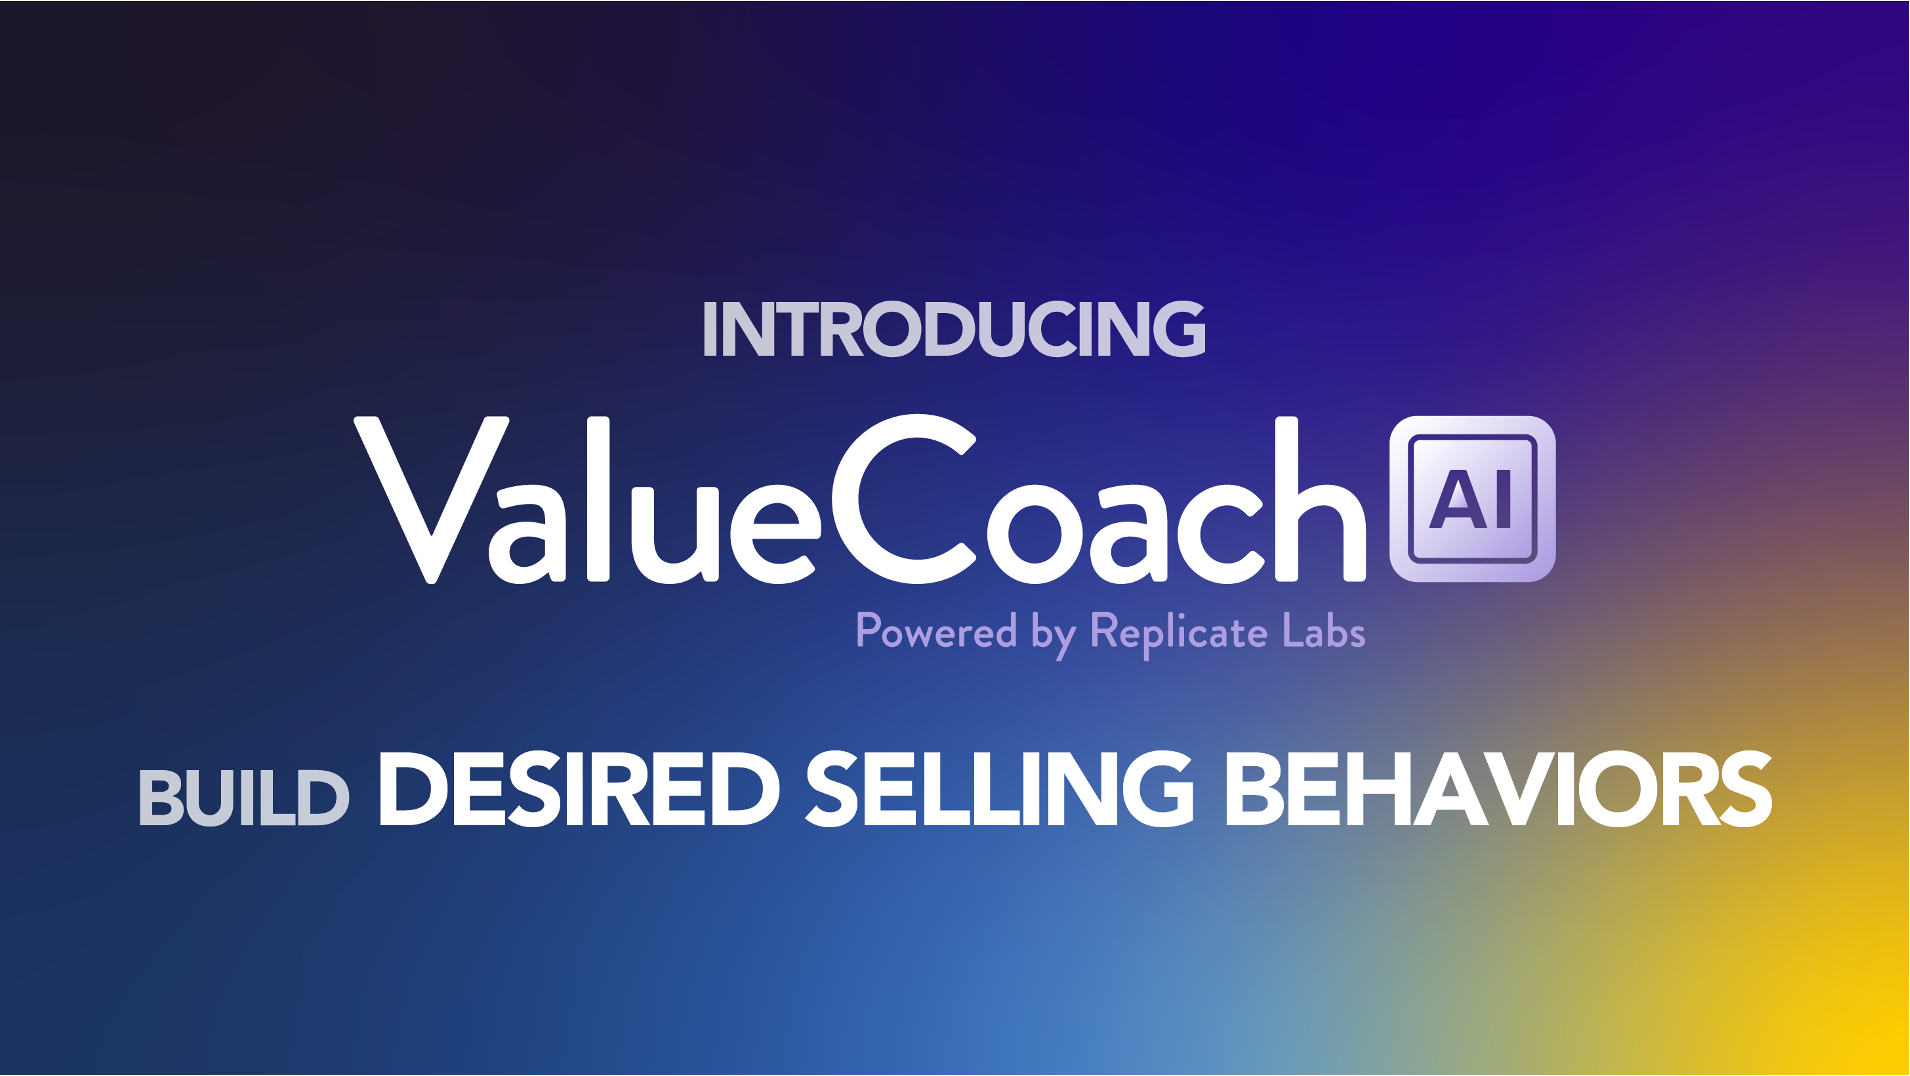 ValueCoach AI image